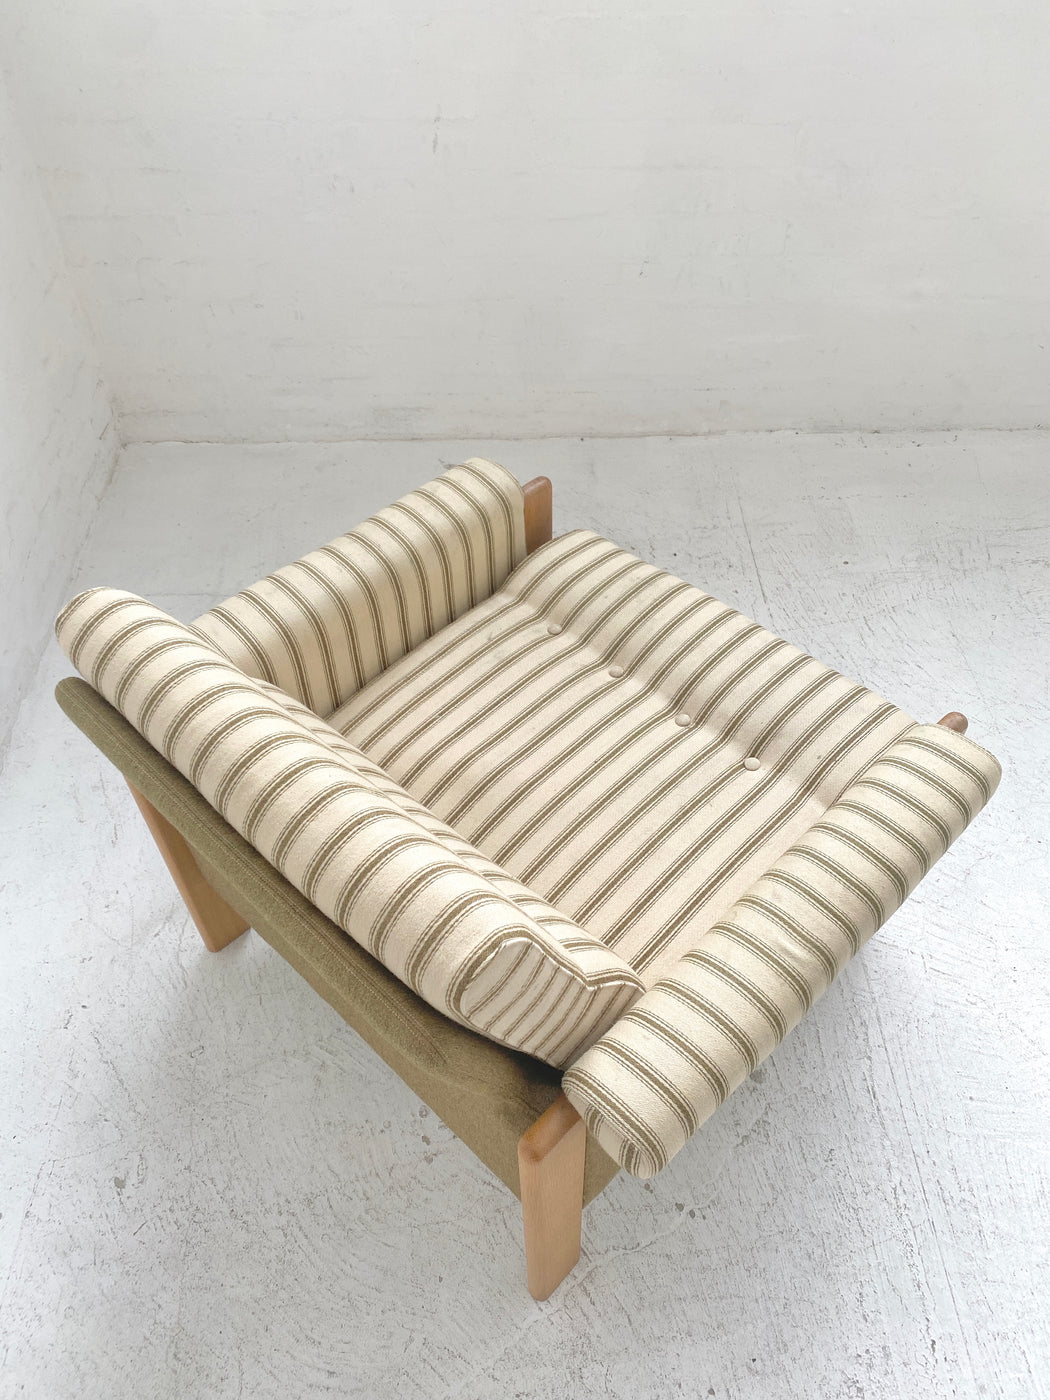 Danish 1970s Lounge Chair